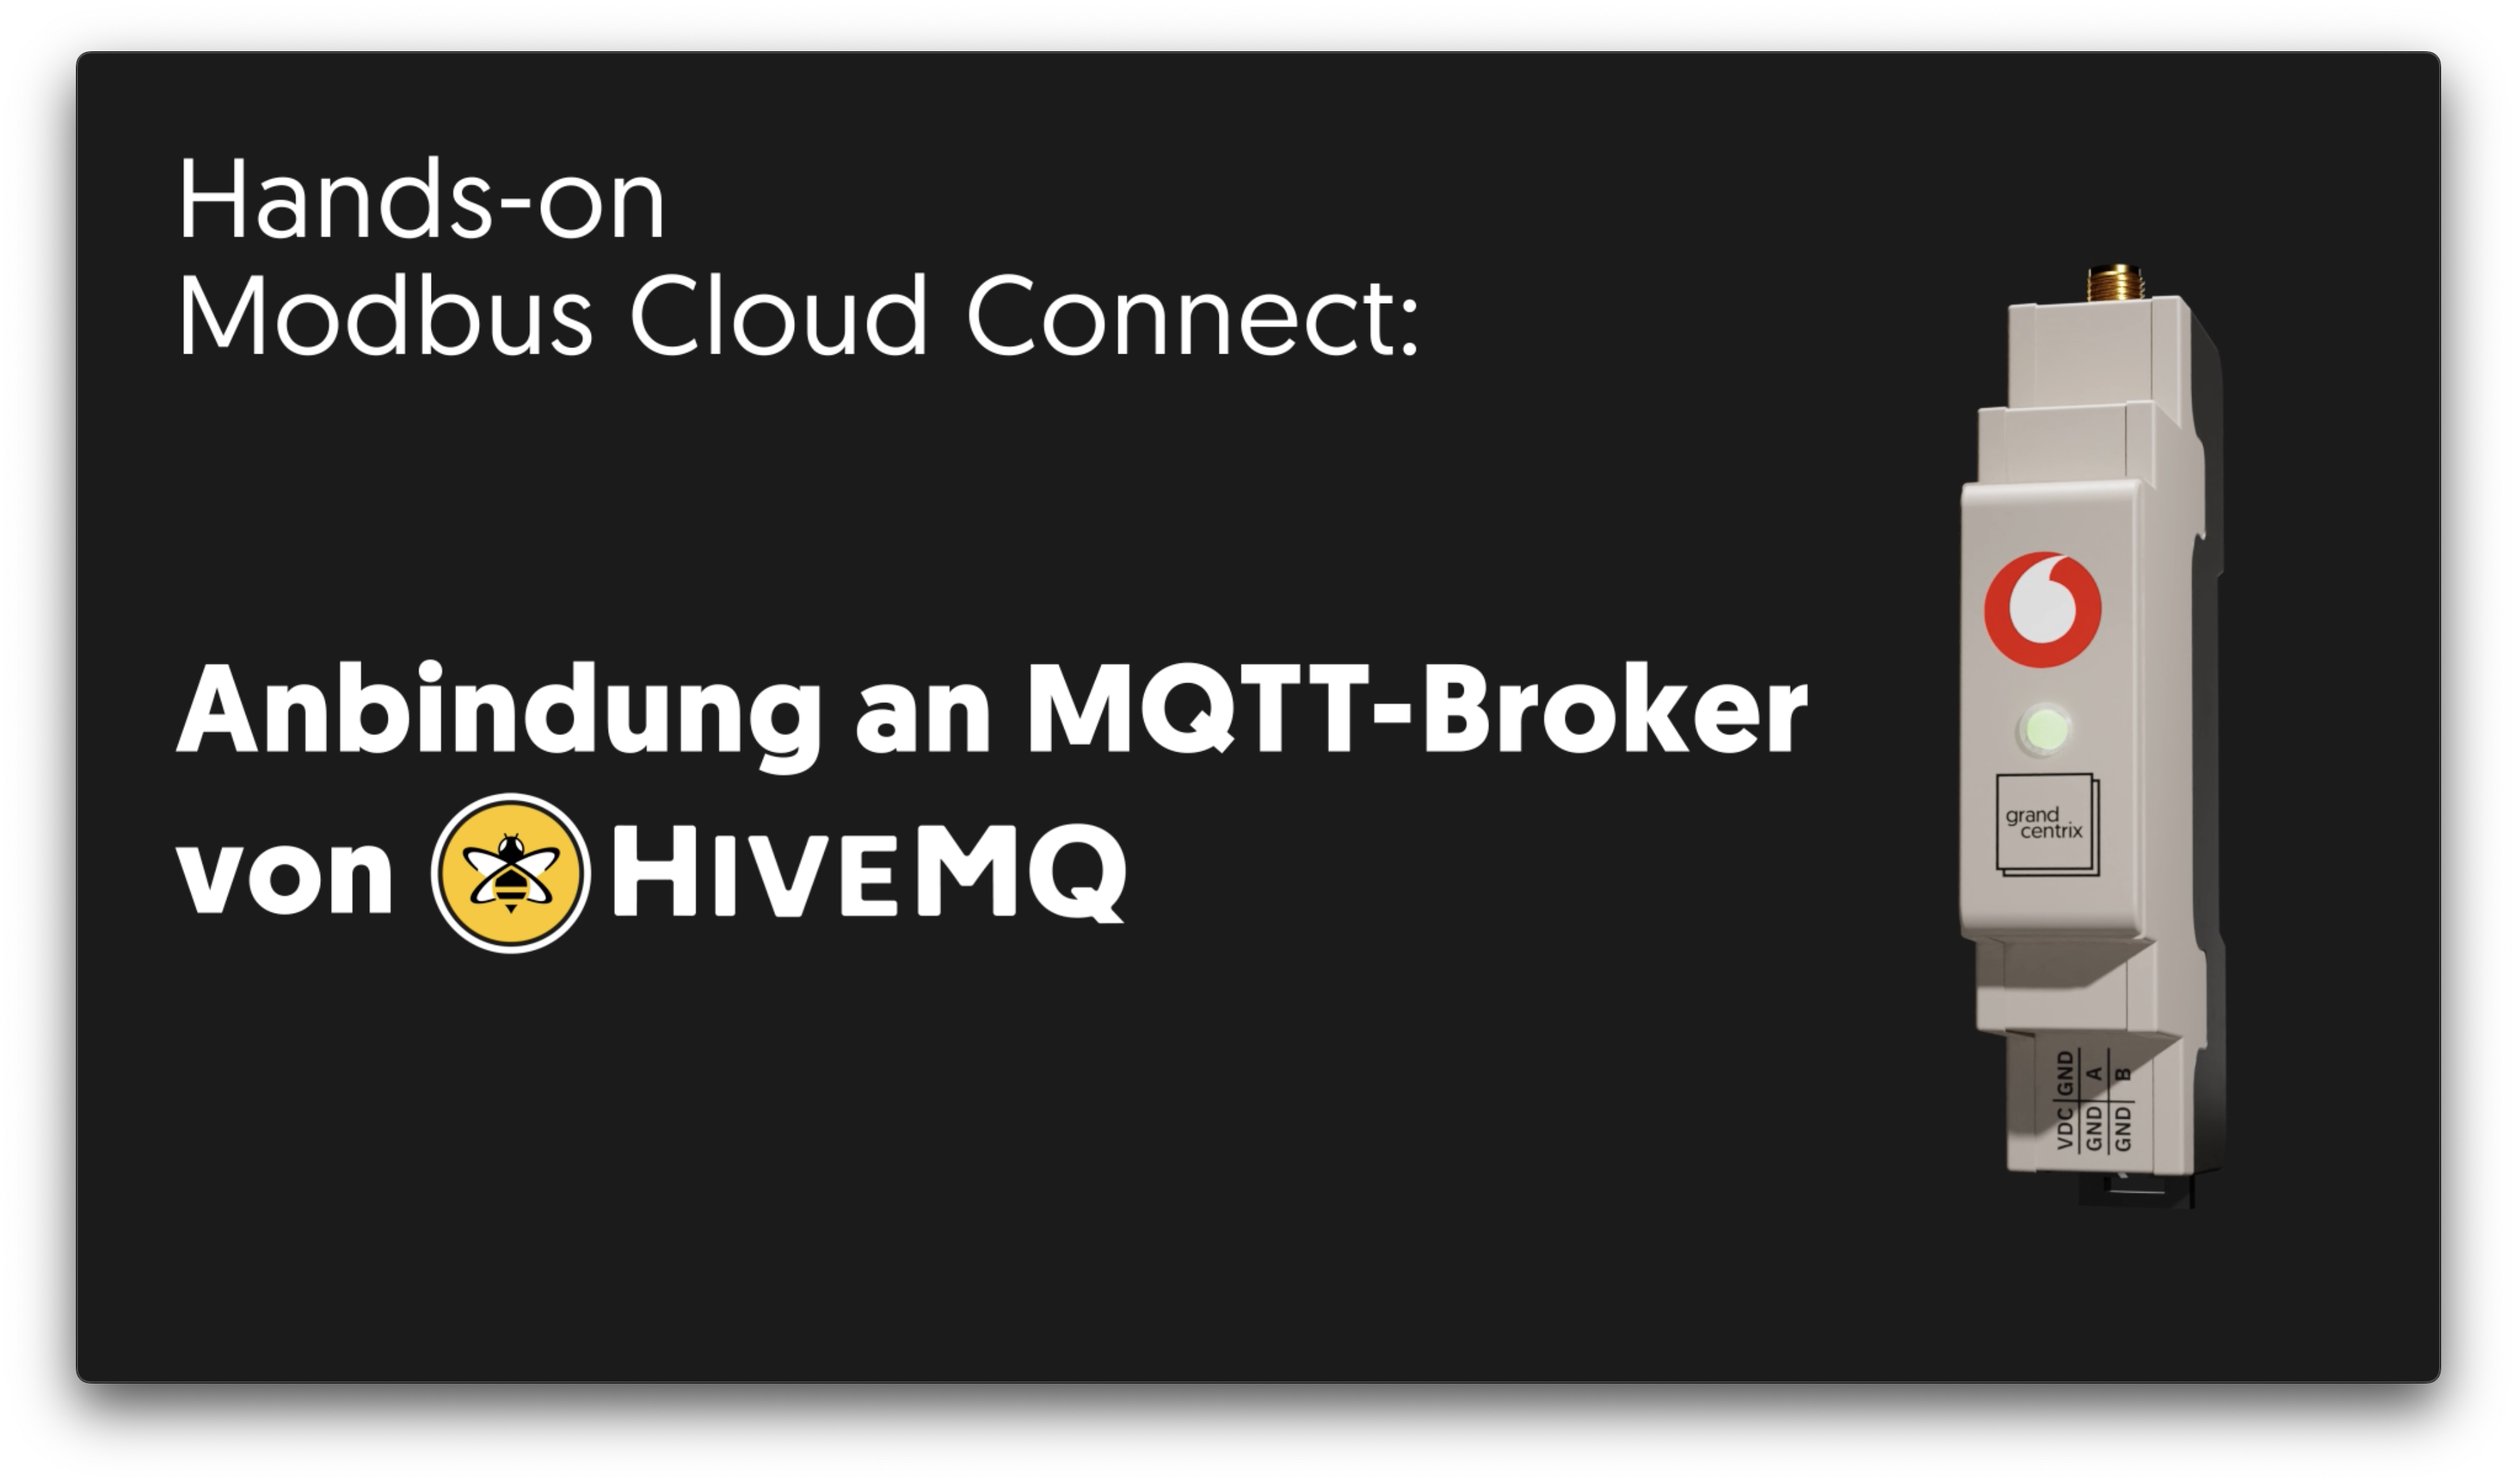 Hands-On Modbus Cloud Connect - Anbindung an MQTT Broker